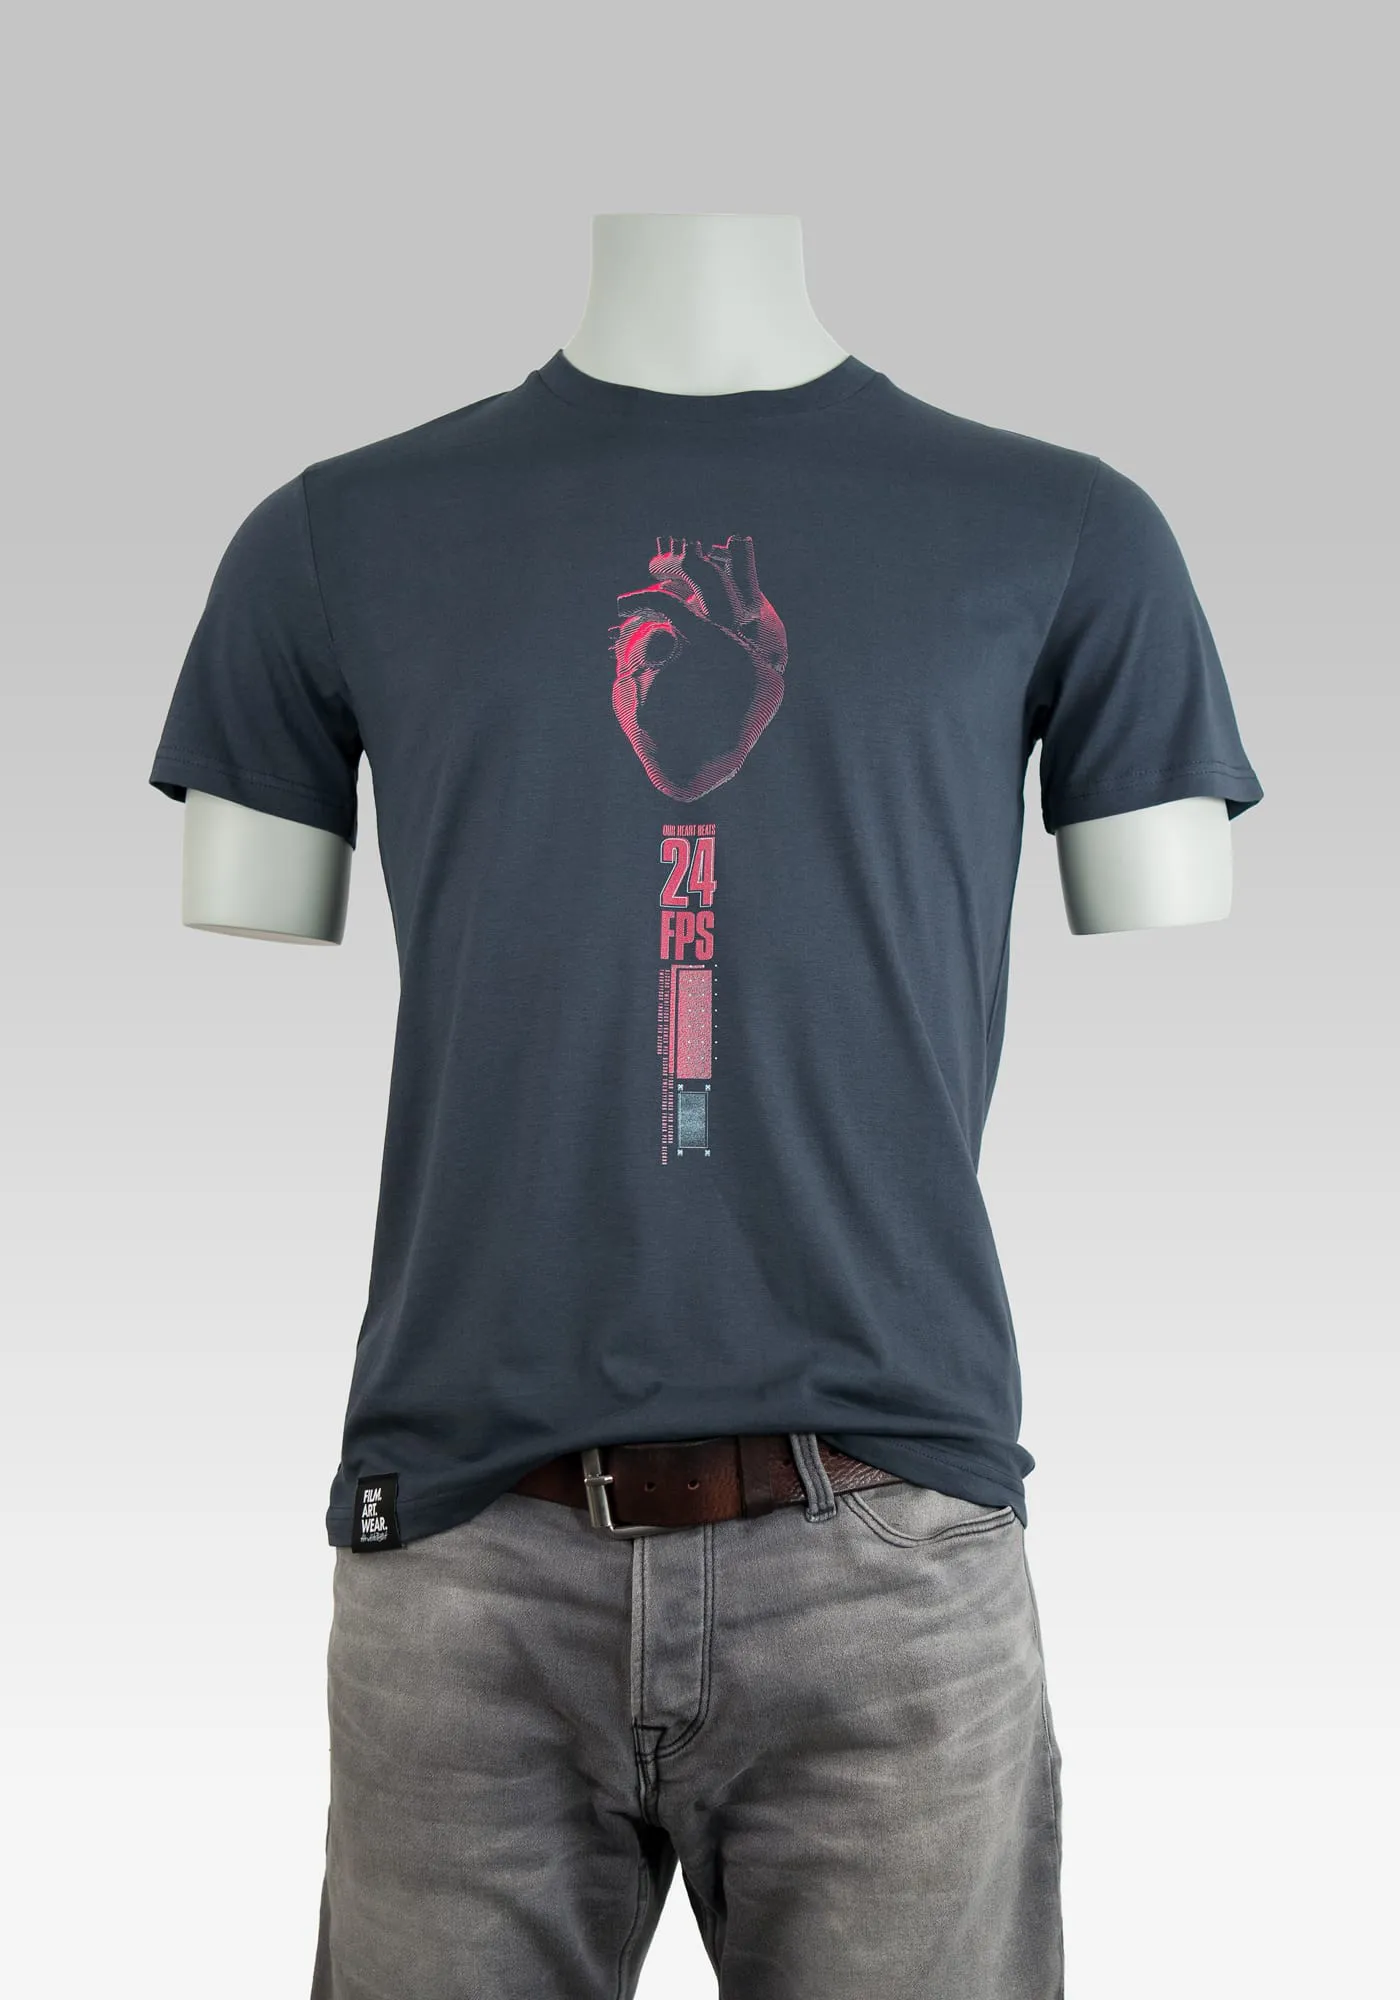 Film shirt mit illustrativem Herzaufdruck und Schriftzug 24FPS